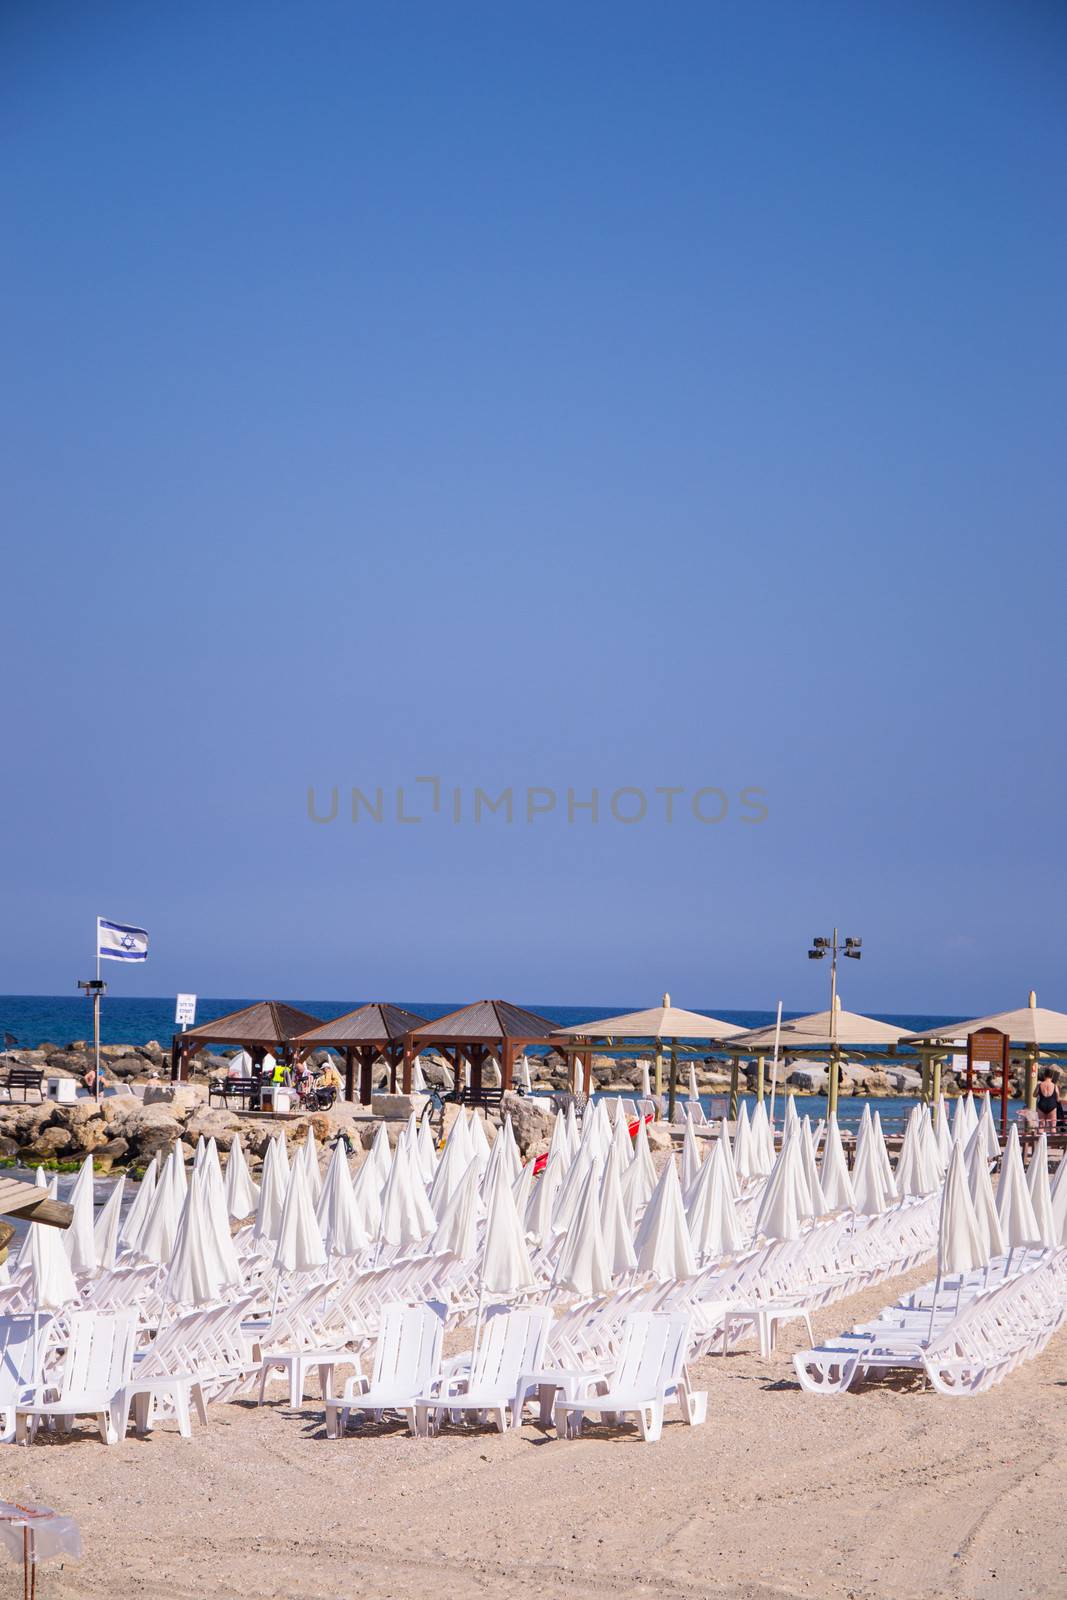  Beach umbrellas and sunbeds on the sand. by slavamalai